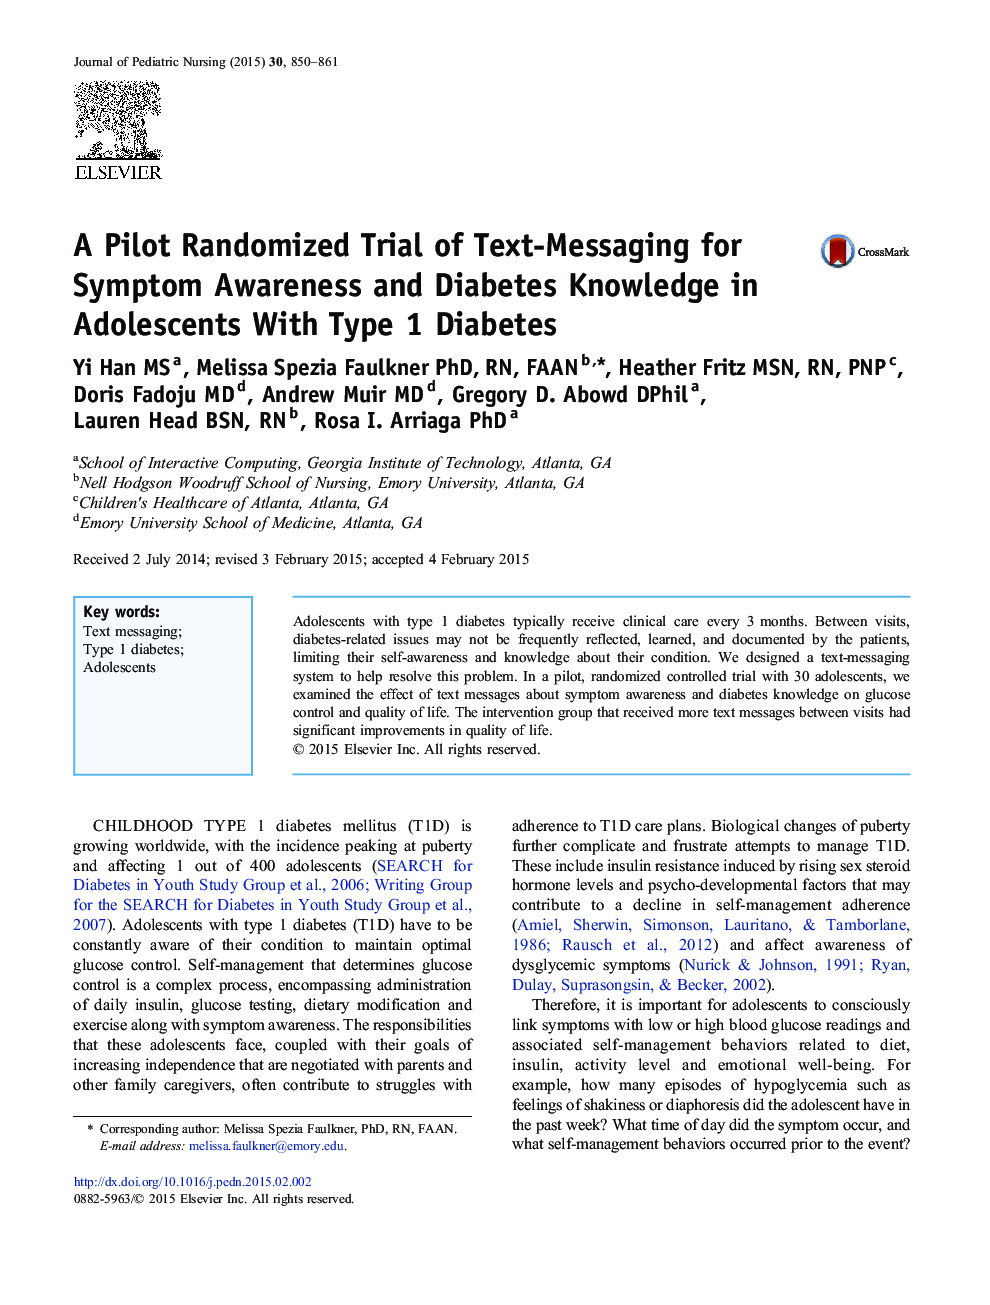 یک آزمایش تصادفی پایلوت از ارسال پیام متنی برای آگاهی از علائم و دیابت در نوجوانان مبتلا به دیابت نوع 1